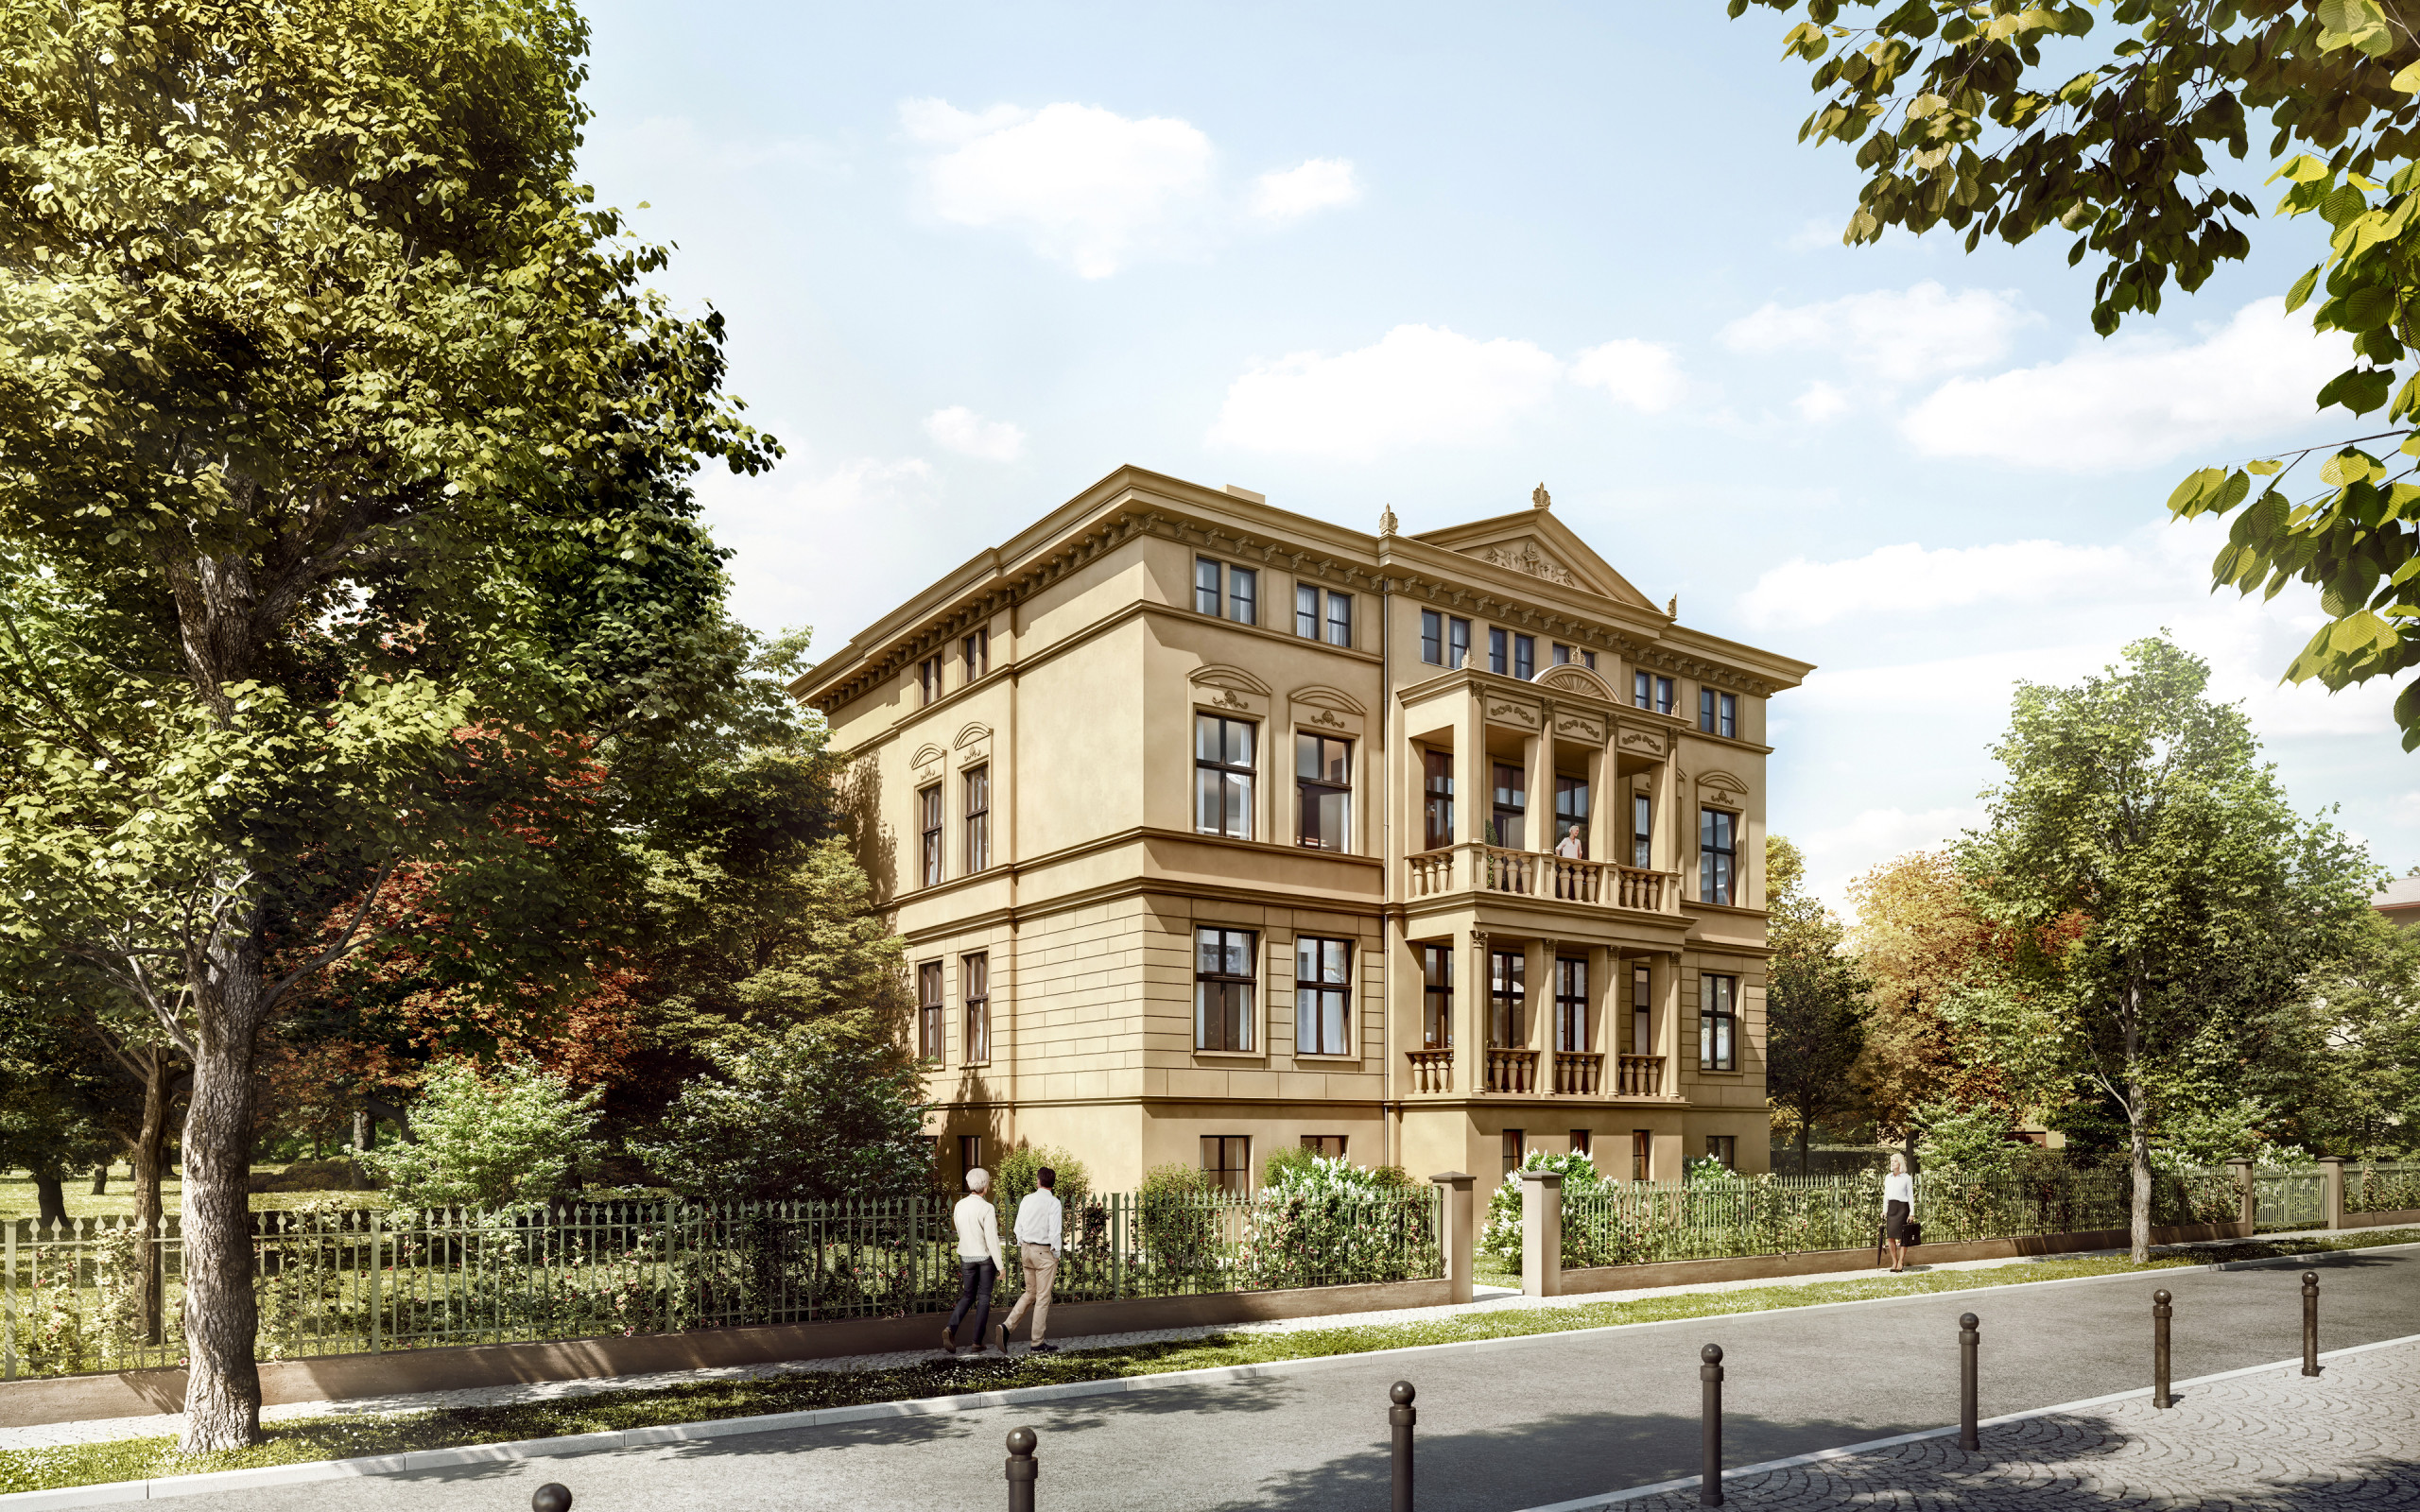 Viualisierung Altbau elegant hochwertig edel Klassizismus Park Straßenansicht Fassade